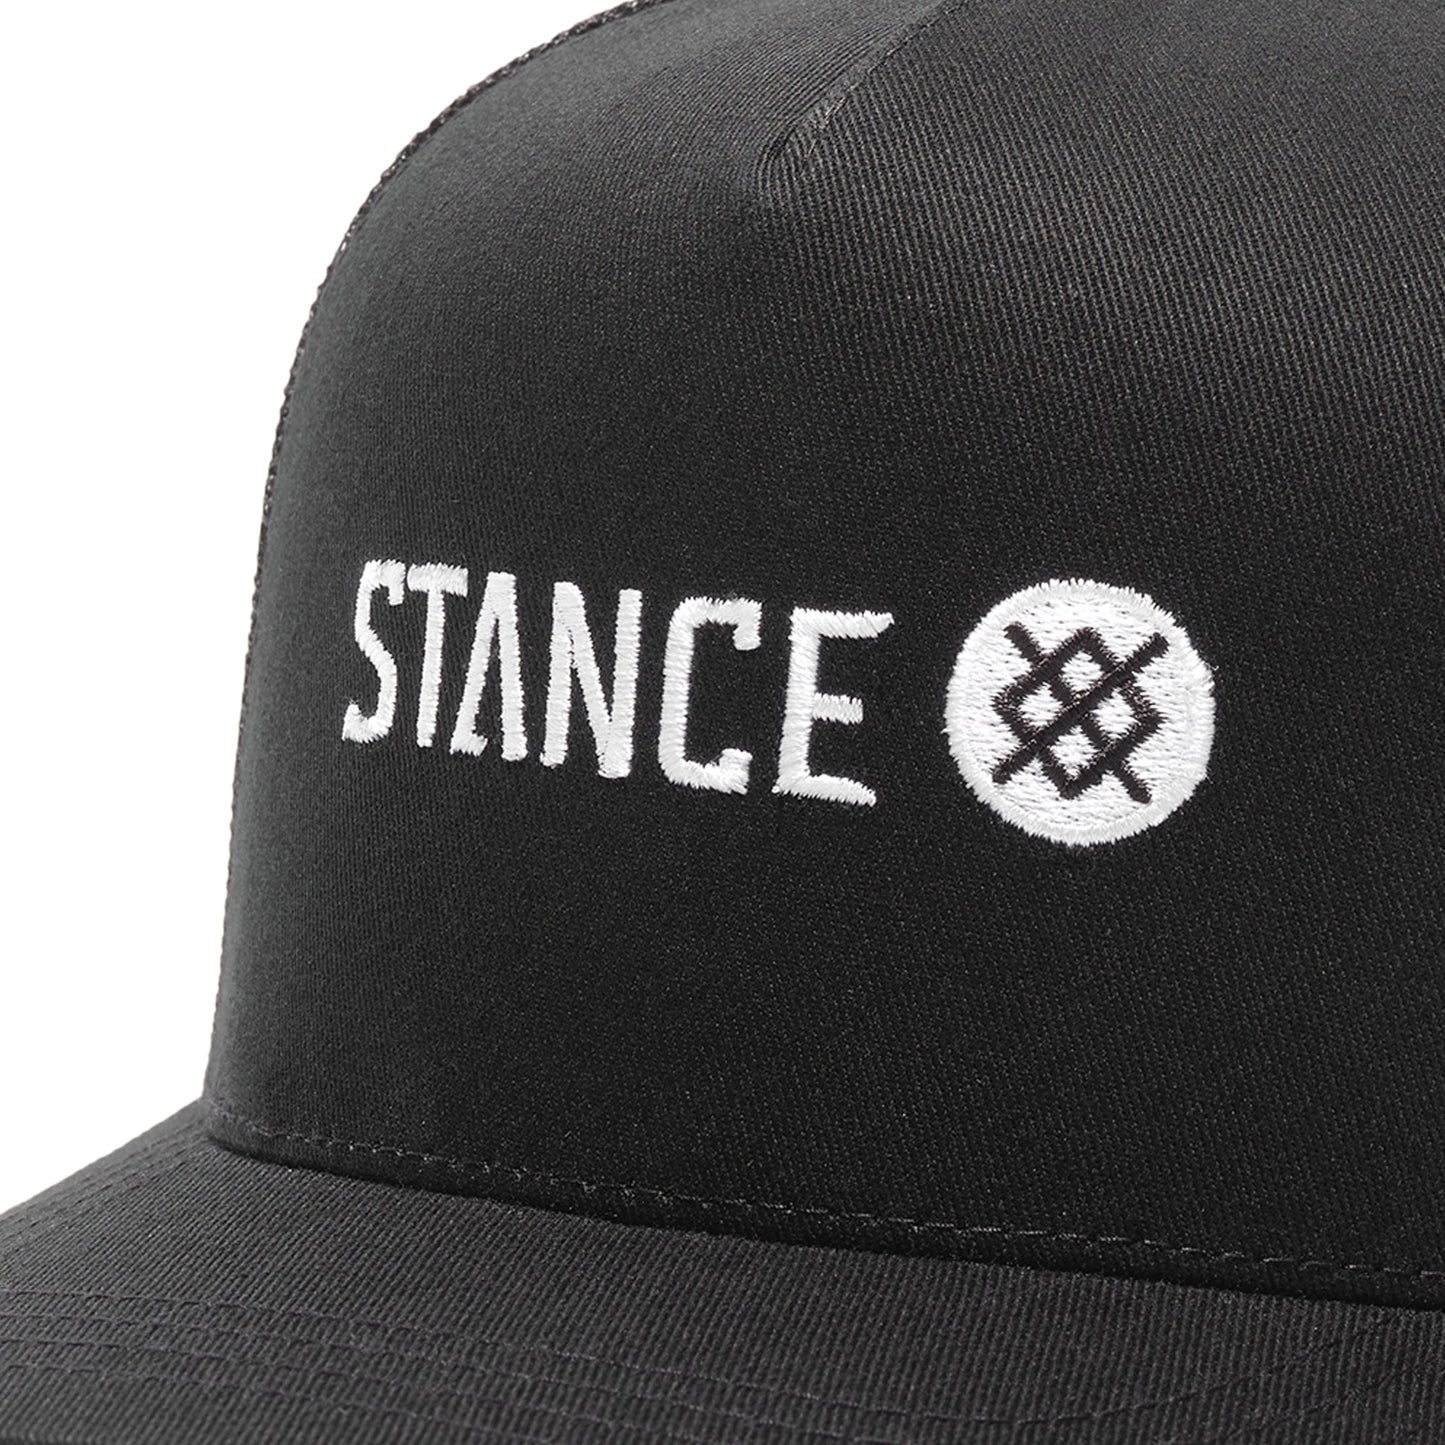 Stance Icon Trucker Hat Black